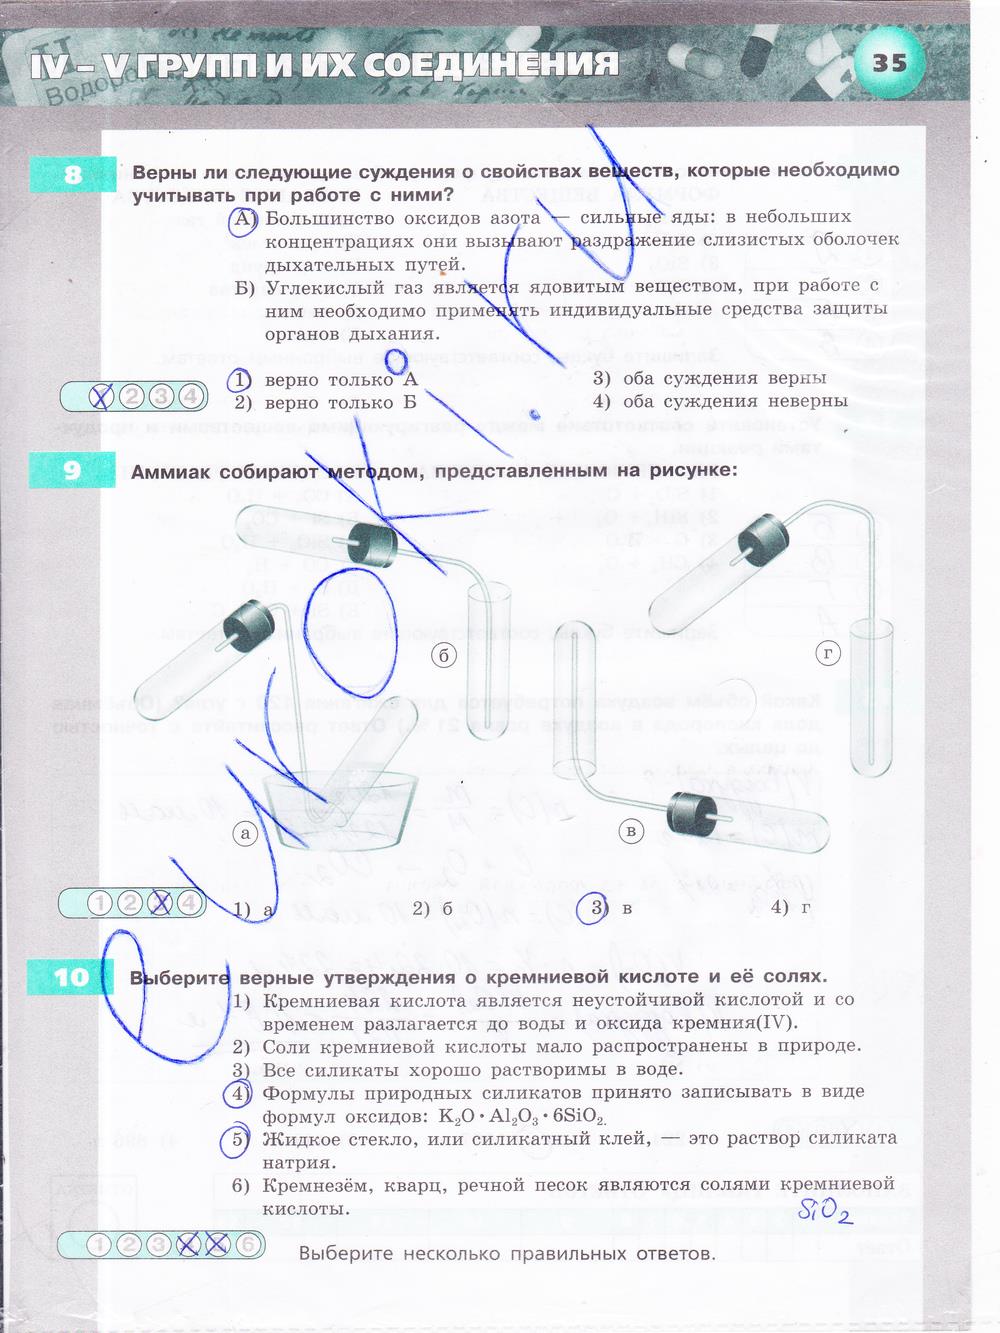 гдз 9 класс тетрадь-экзаменатор страница 35 химия Бобылева, Бирюлина